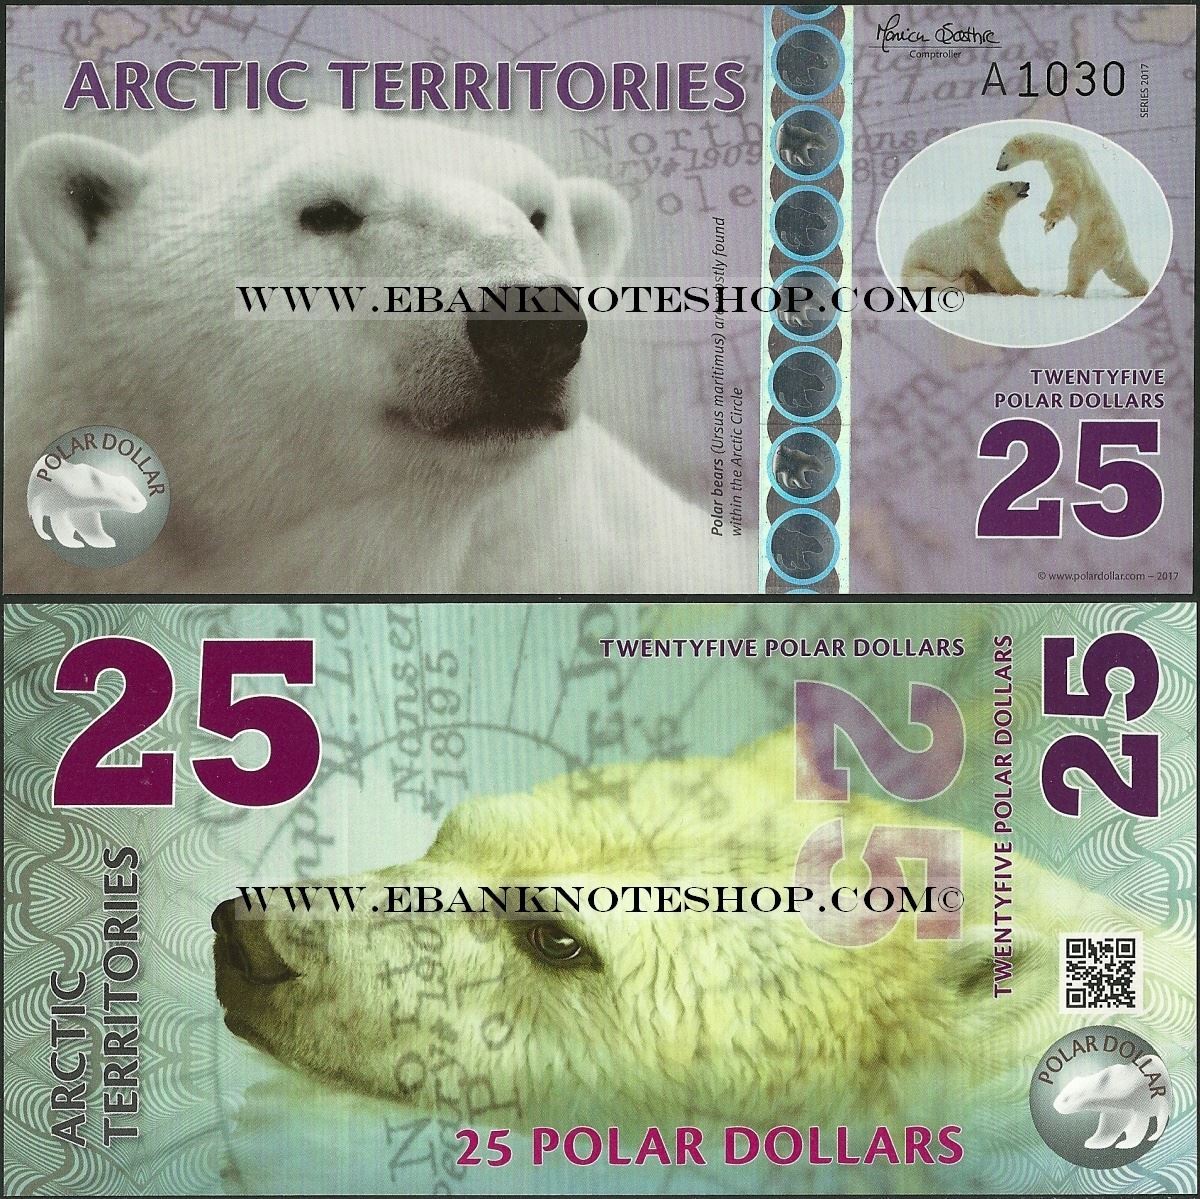 Arctic Territories 50 Polar Dollars 2017 King Eider Unc